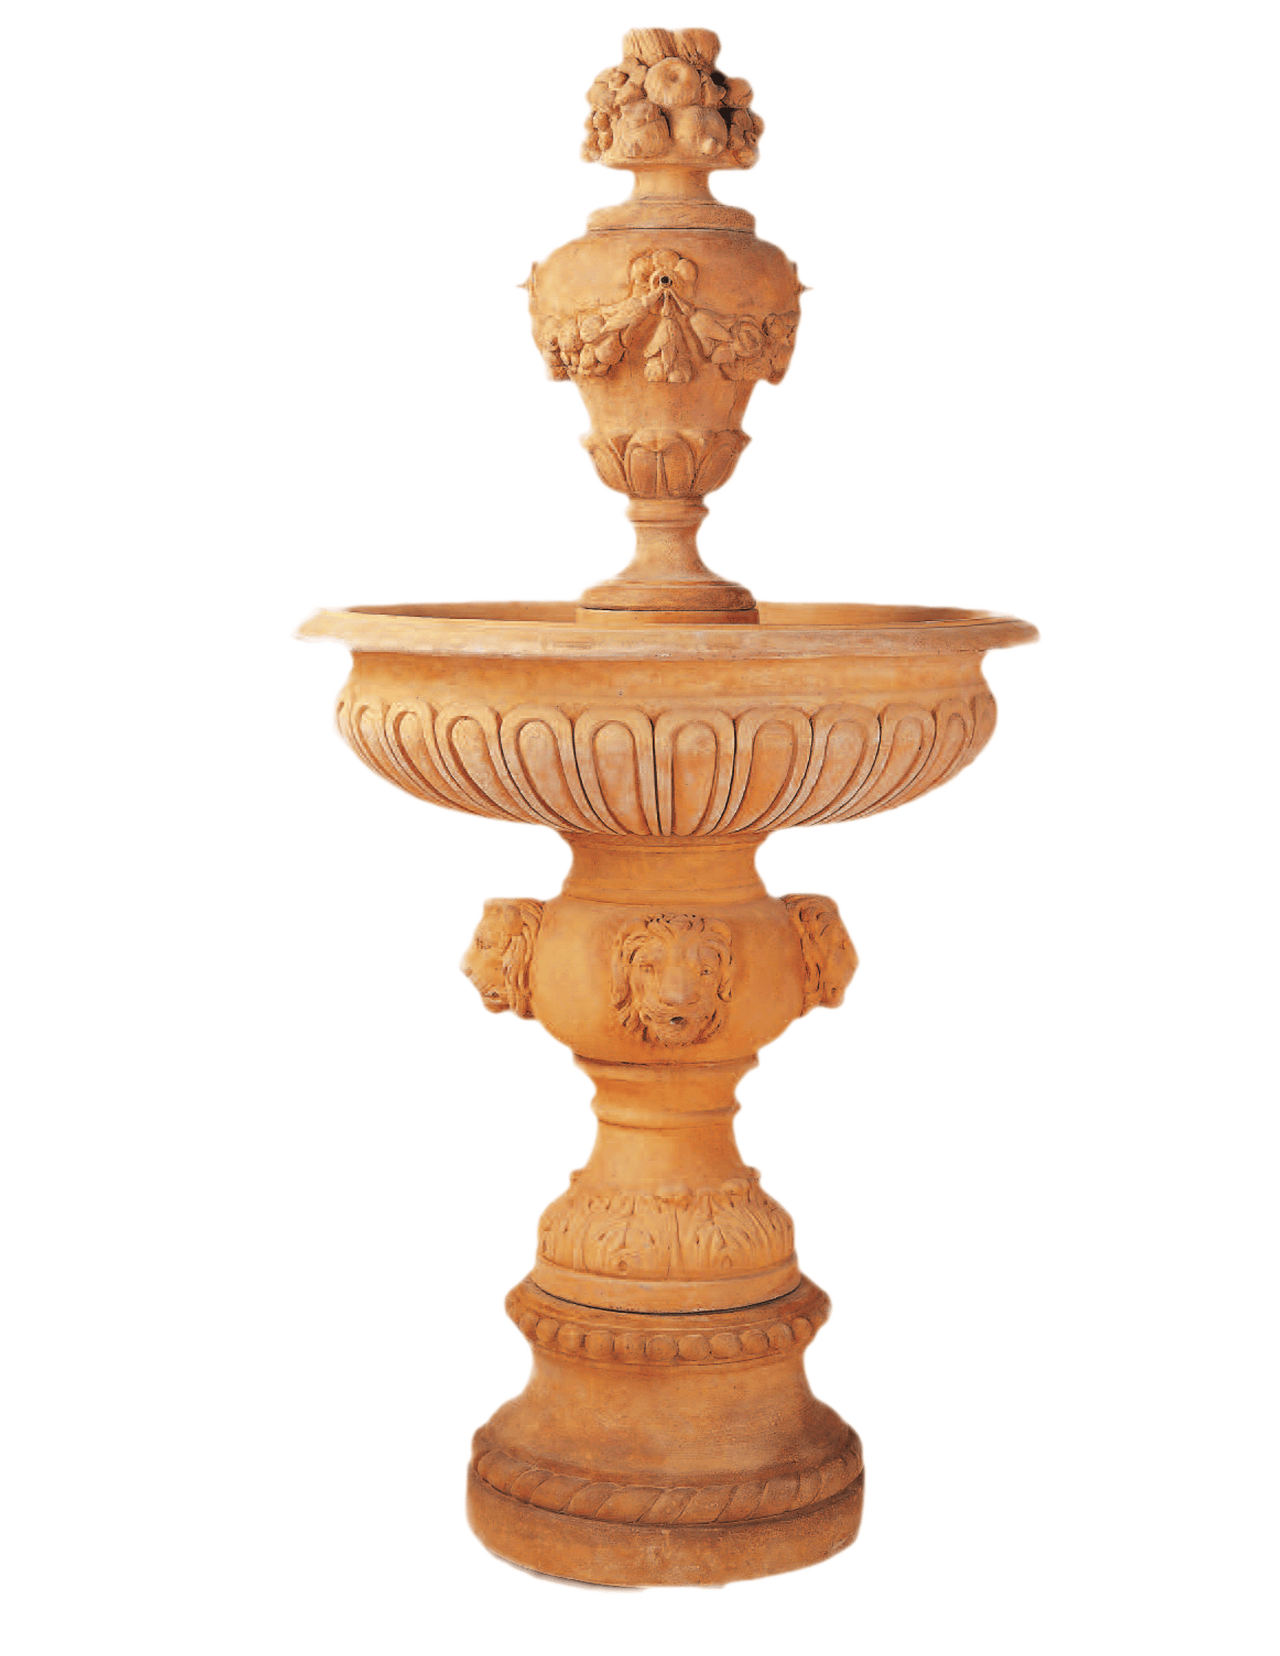 Kensington Cast Stone Outdoor Garden Fountain With Spout Fountain Tuscan 